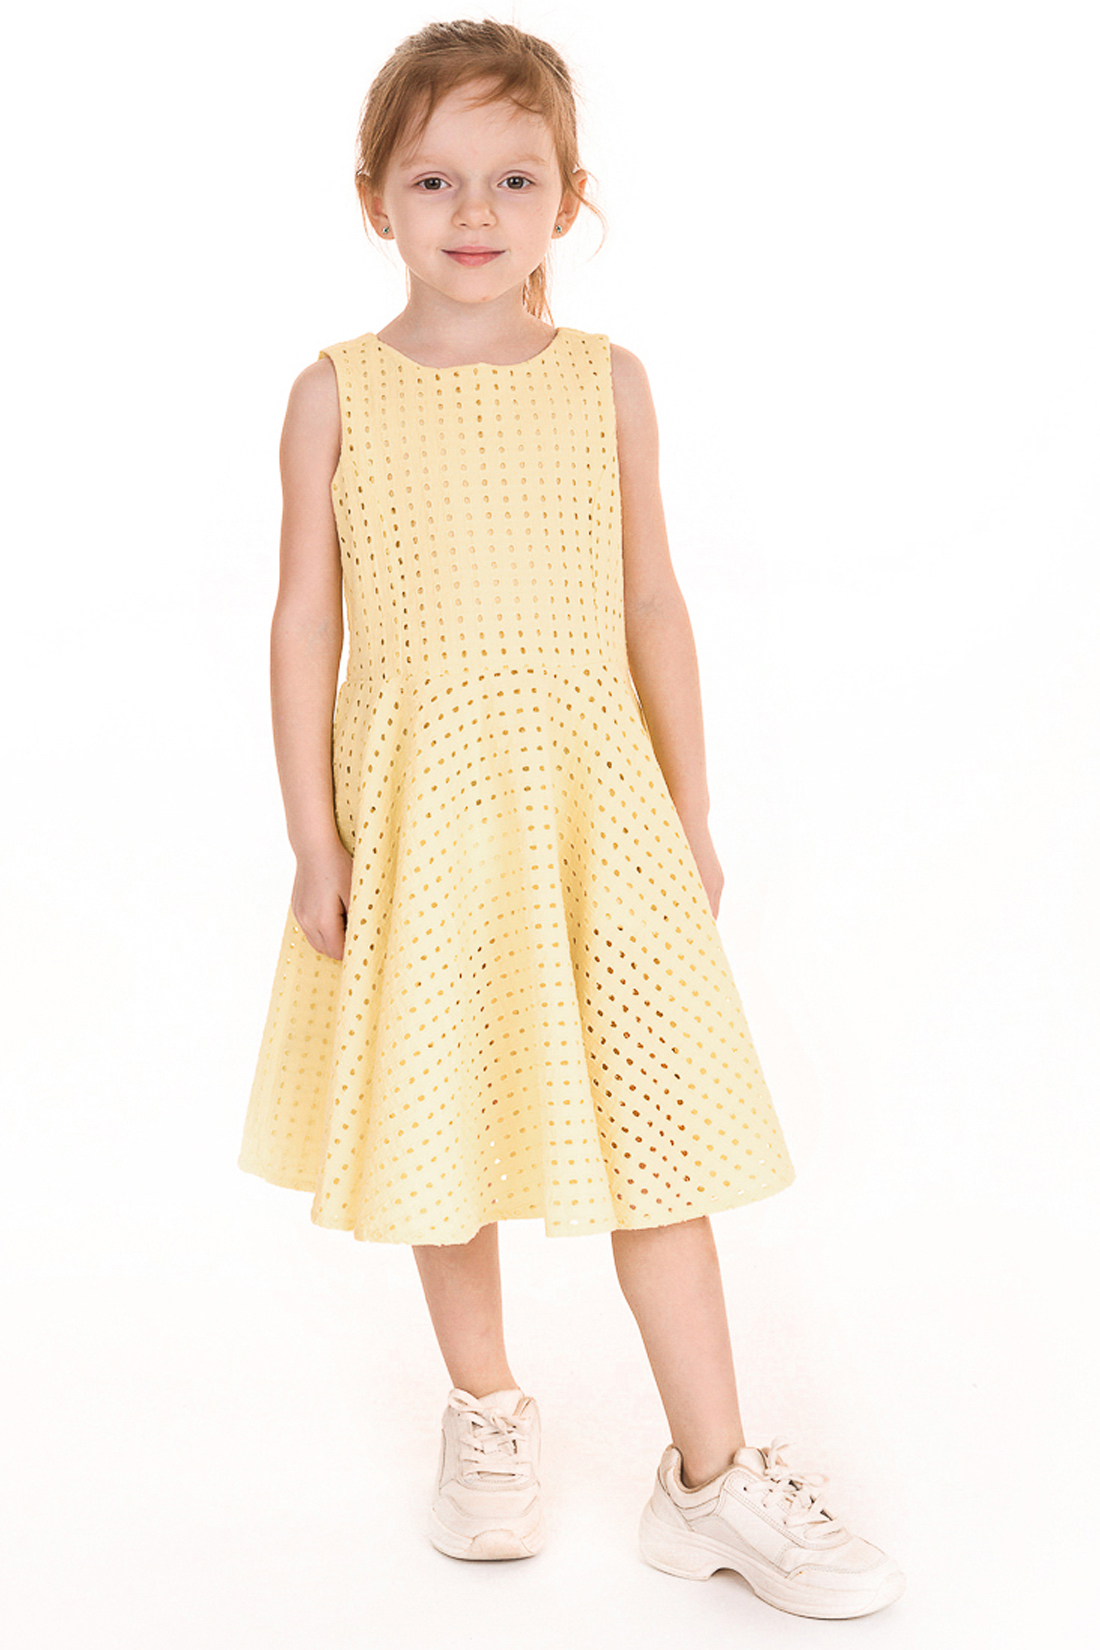 Платье для девочки (арт. baon BK459007), размер 98-104, цвет желтый Платье для девочки (арт. baon BK459007) - фото 1